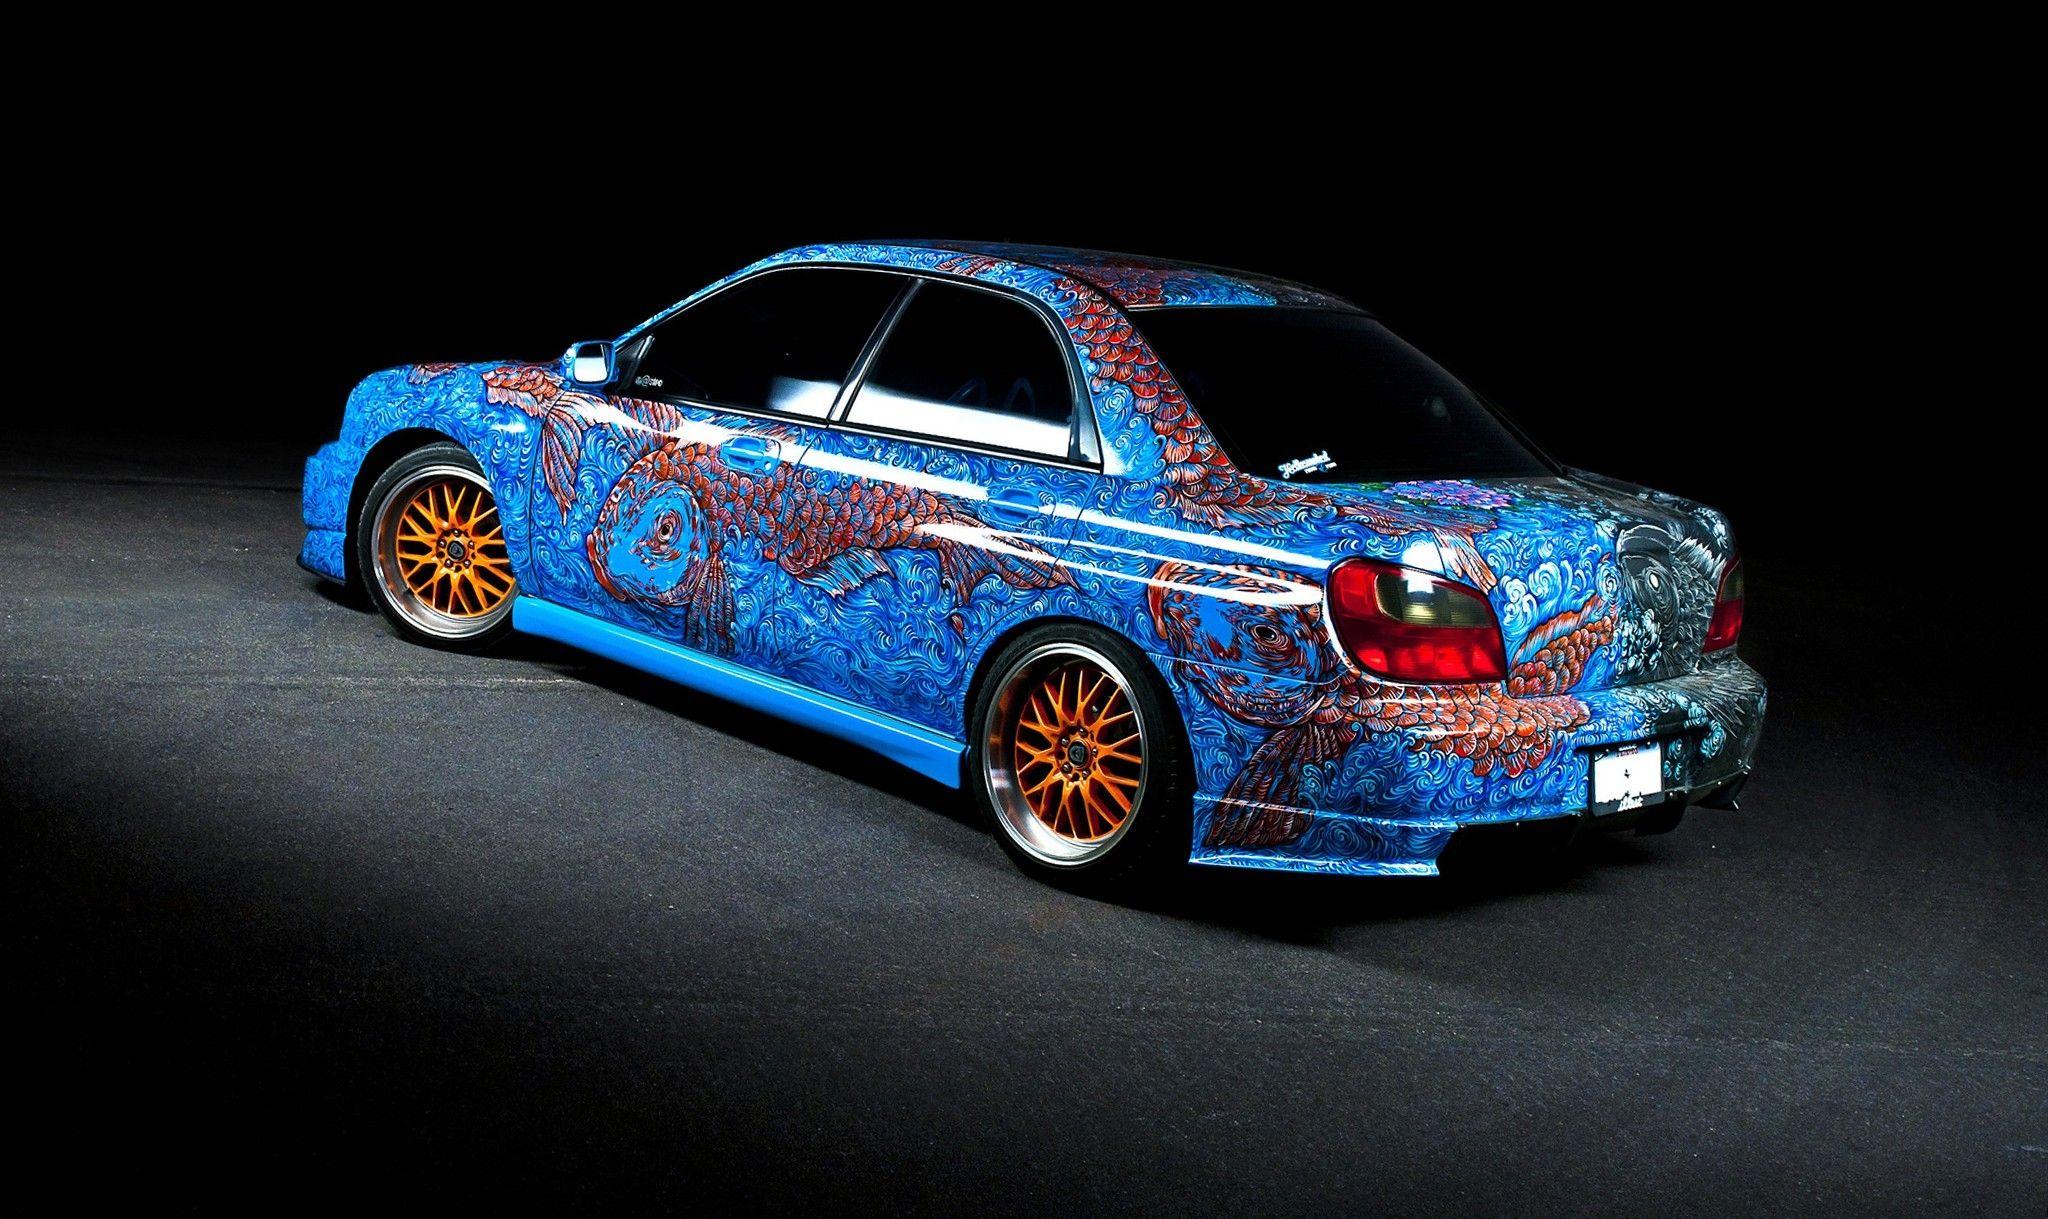 2048x1219 Subaru art car jdm 2048x1219 wallpaper Hình nền chất lượng cao, Hình nền độ nét cao